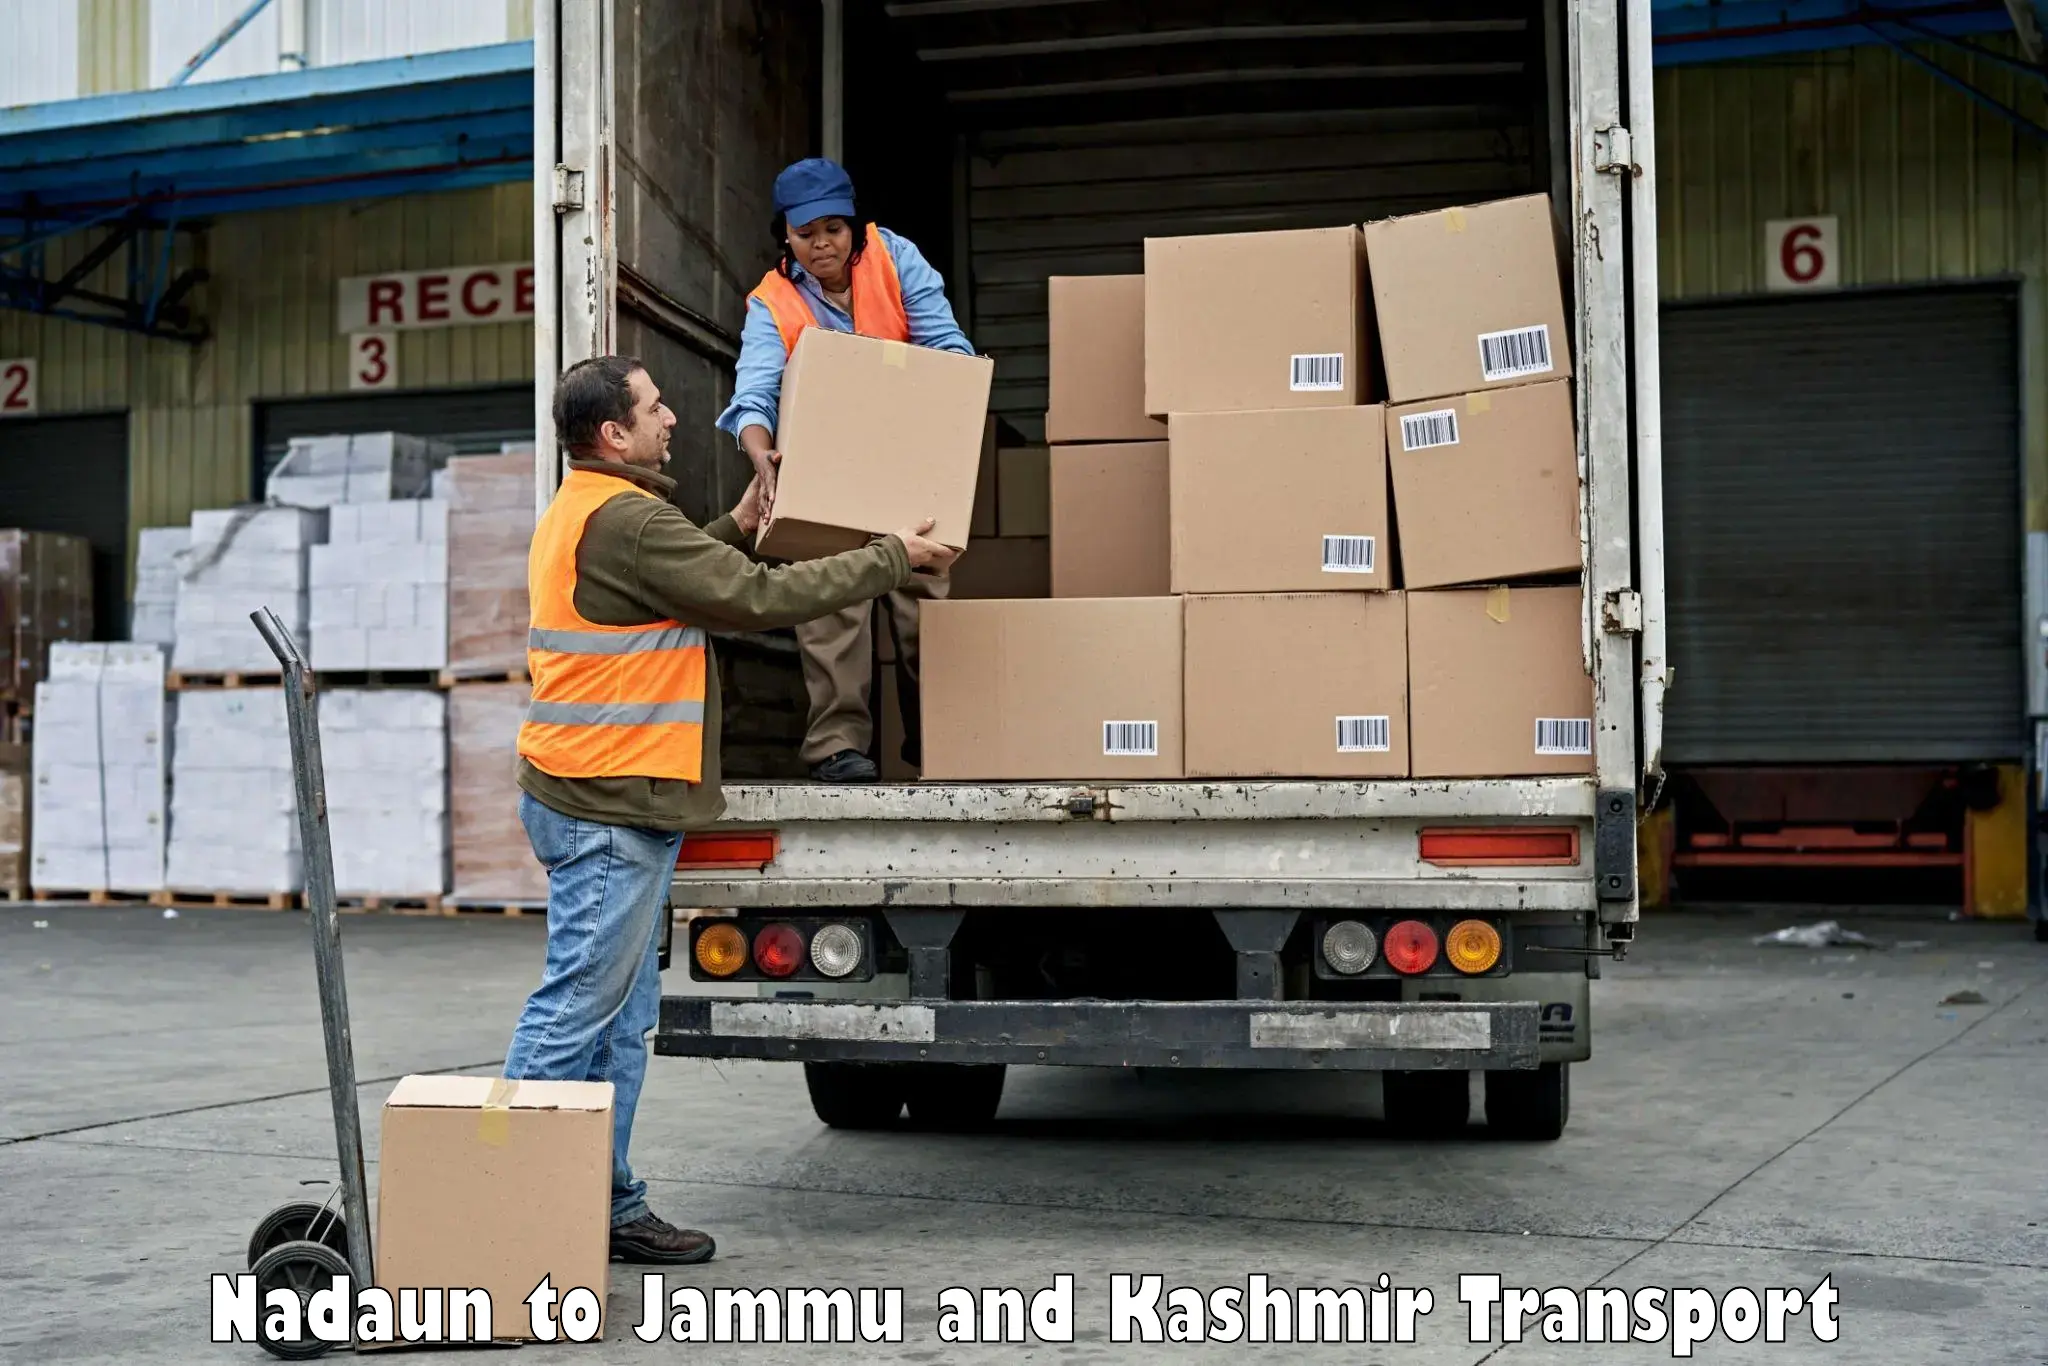 Land transport services Nadaun to Jammu and Kashmir